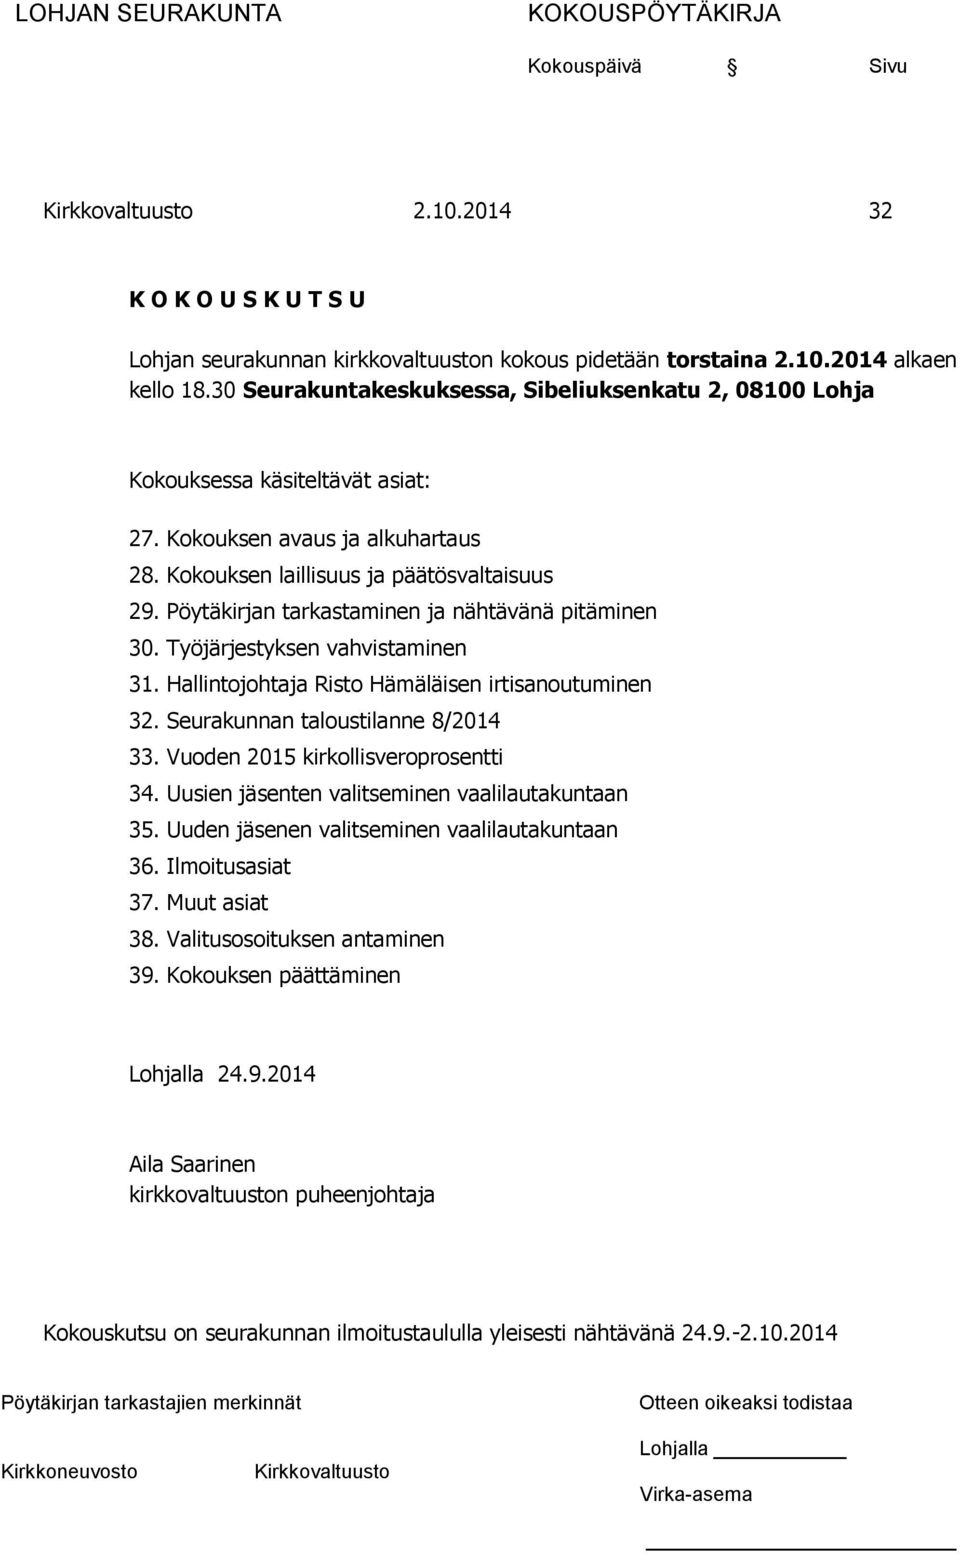 Pöytäkirjan tarkastaminen ja nähtävänä pitäminen 30. Työjärjestyksen vahvistaminen 31. Hallintojohtaja Risto Hämäläisen irtisanoutuminen 32. Seurakunnan taloustilanne 8/2014 33.